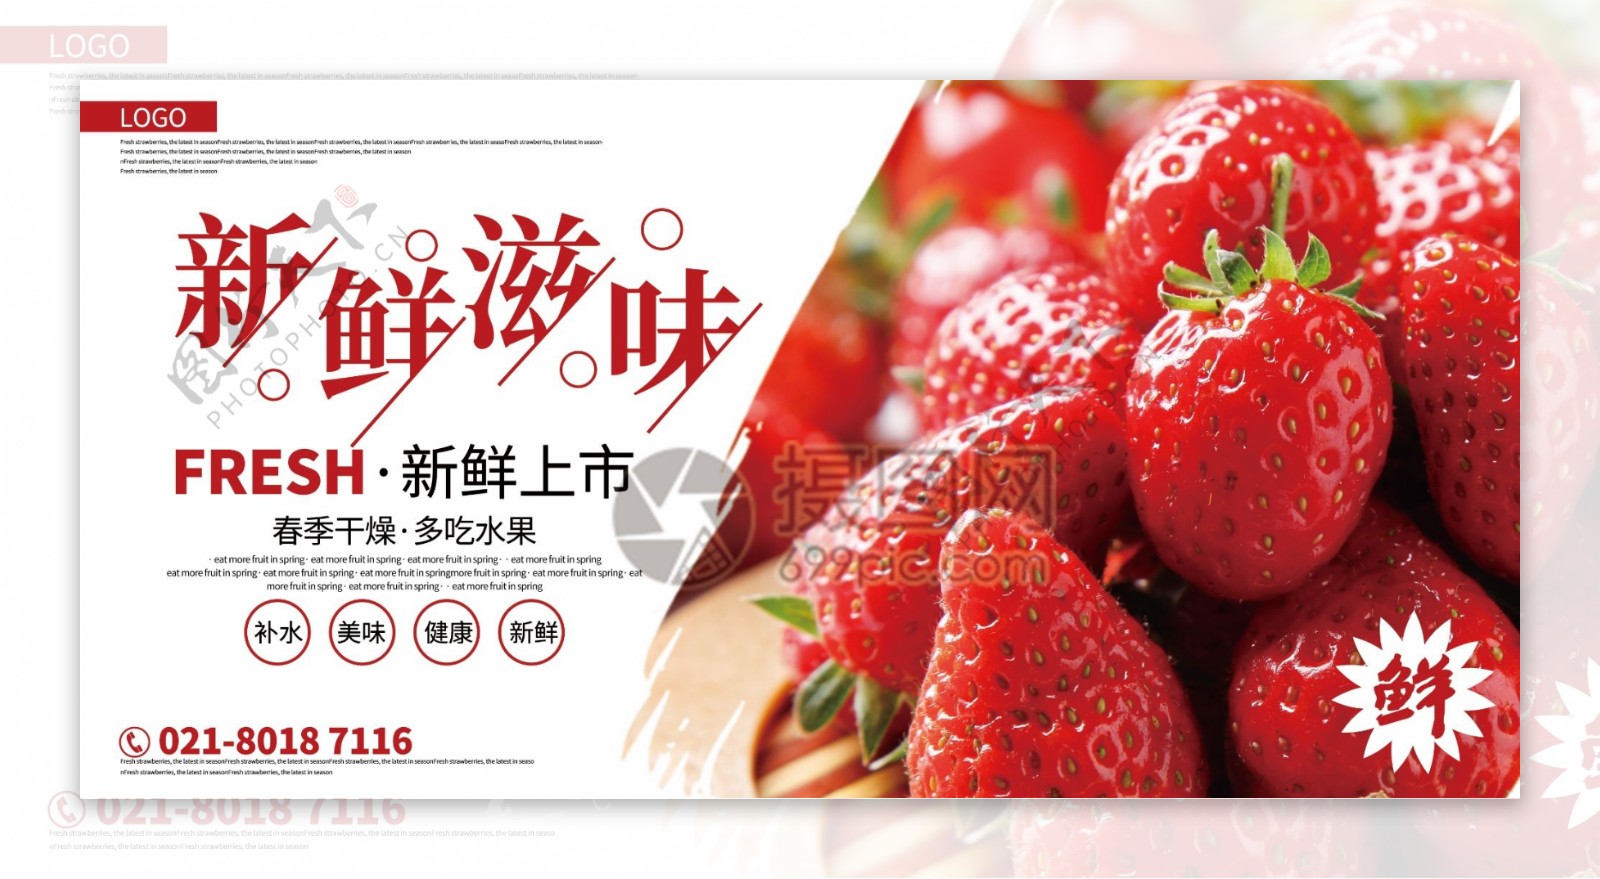 新鲜滋味草莓促销展板